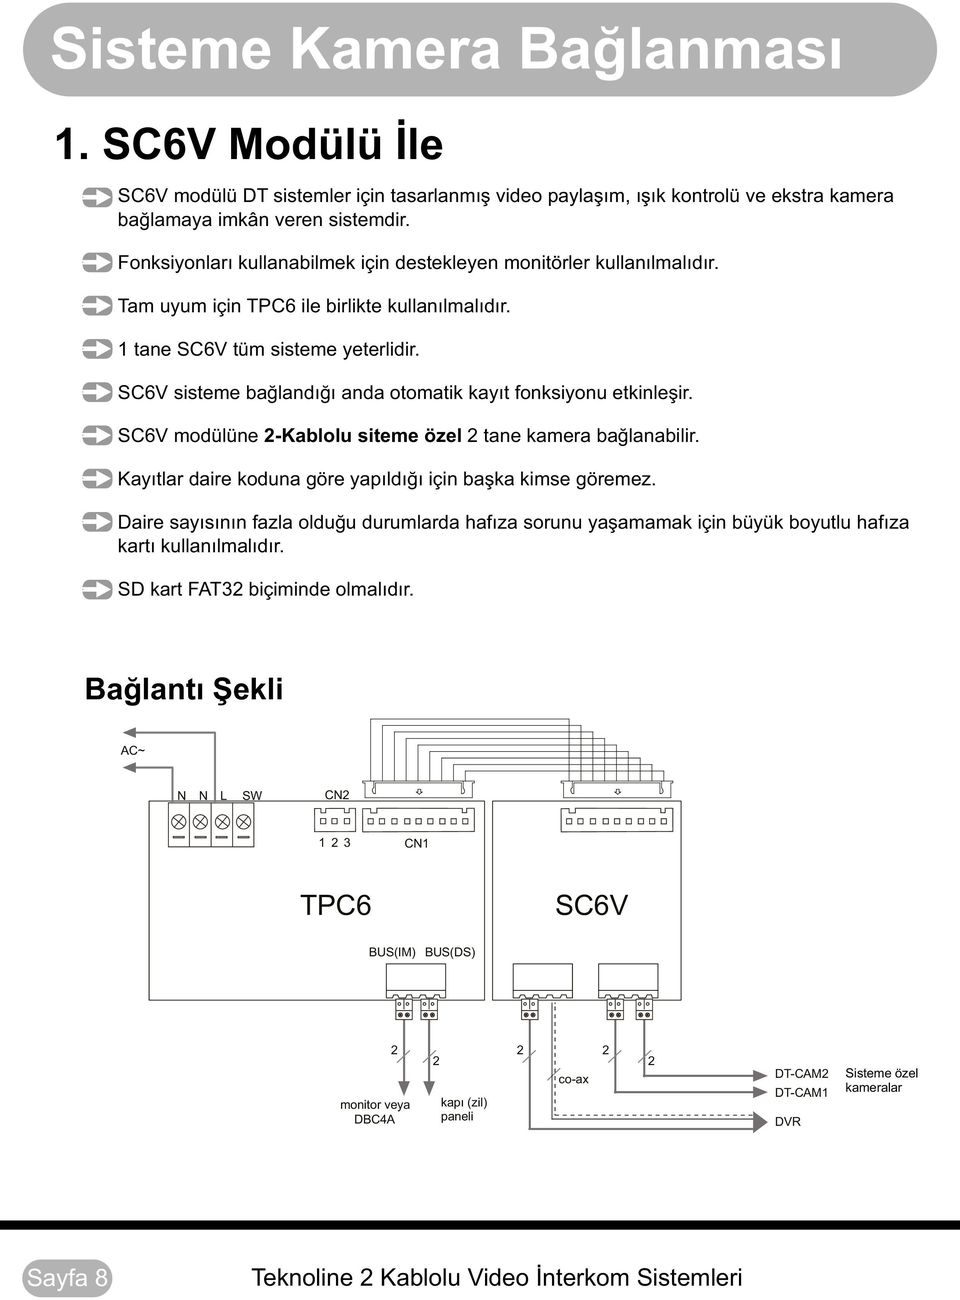 SC6V sisteme bağlandığı anda otomatik kayıt fonksiyonu etkinleşir. SC6V modülüne -Kablolu siteme özel tane kamera bağlanabilir. Kayıtlar daire koduna göre yapıldığı için başka kimse göremez.